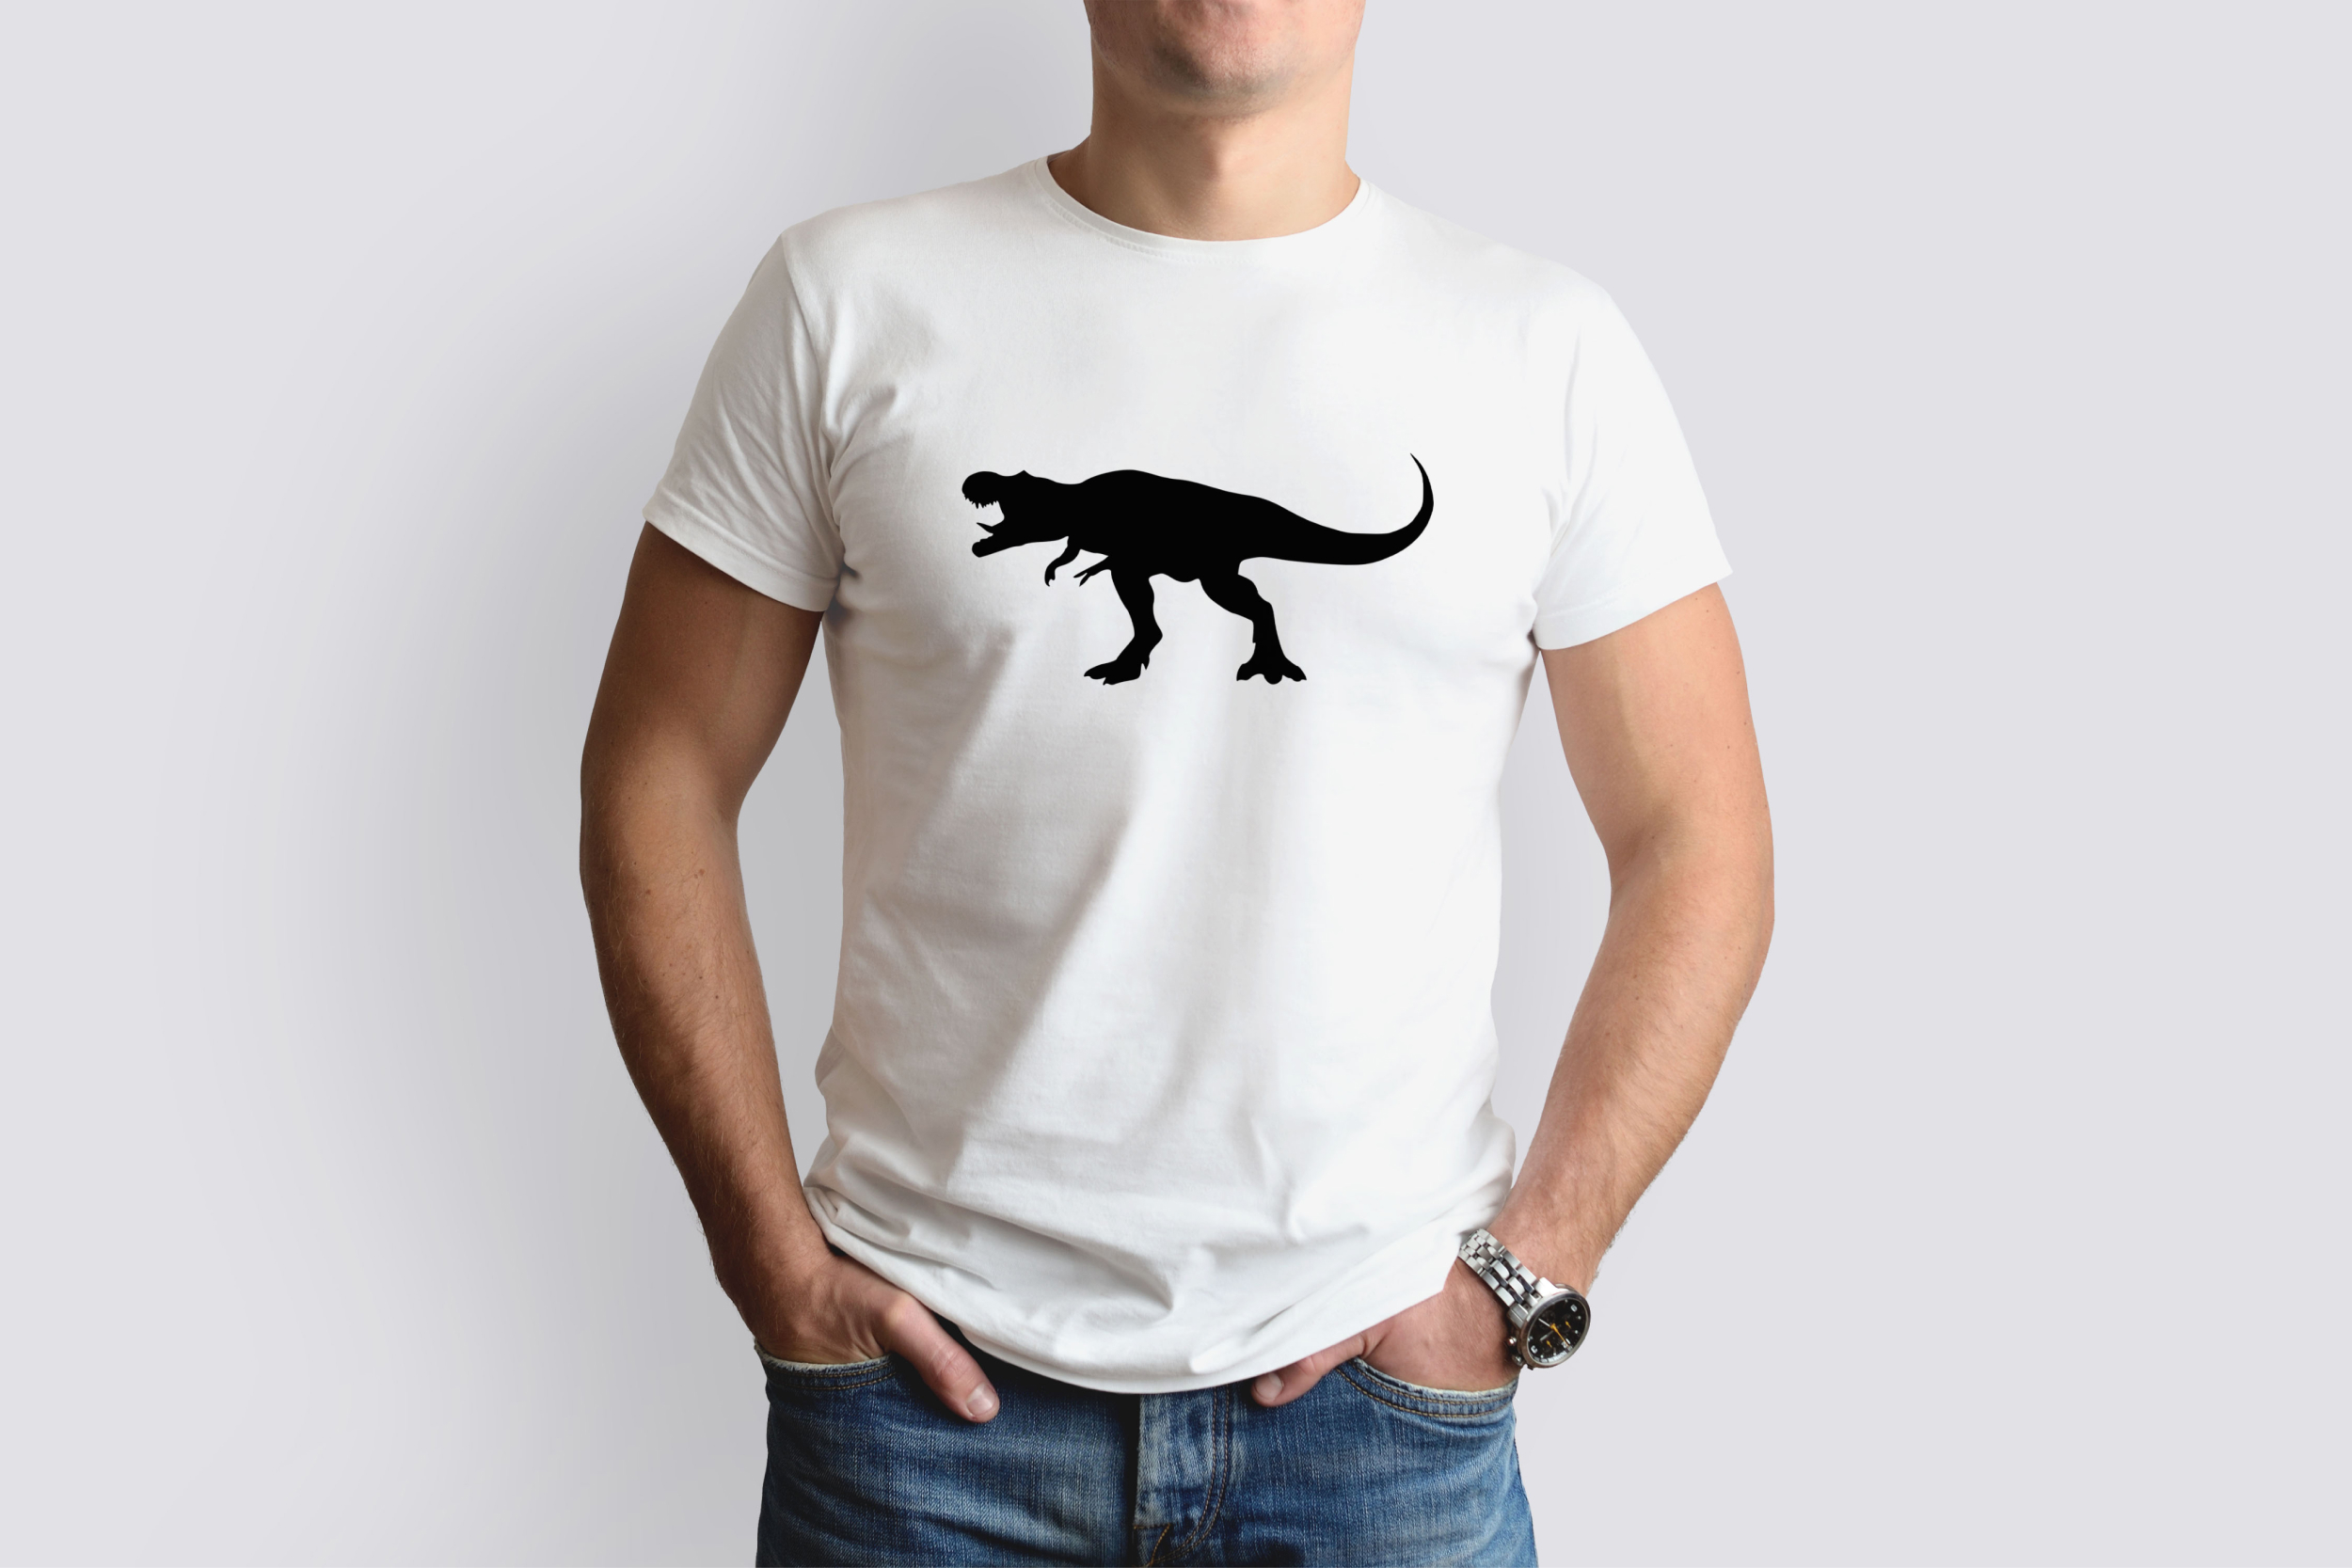 t rex silhouette t shirt designs bundle 04 49